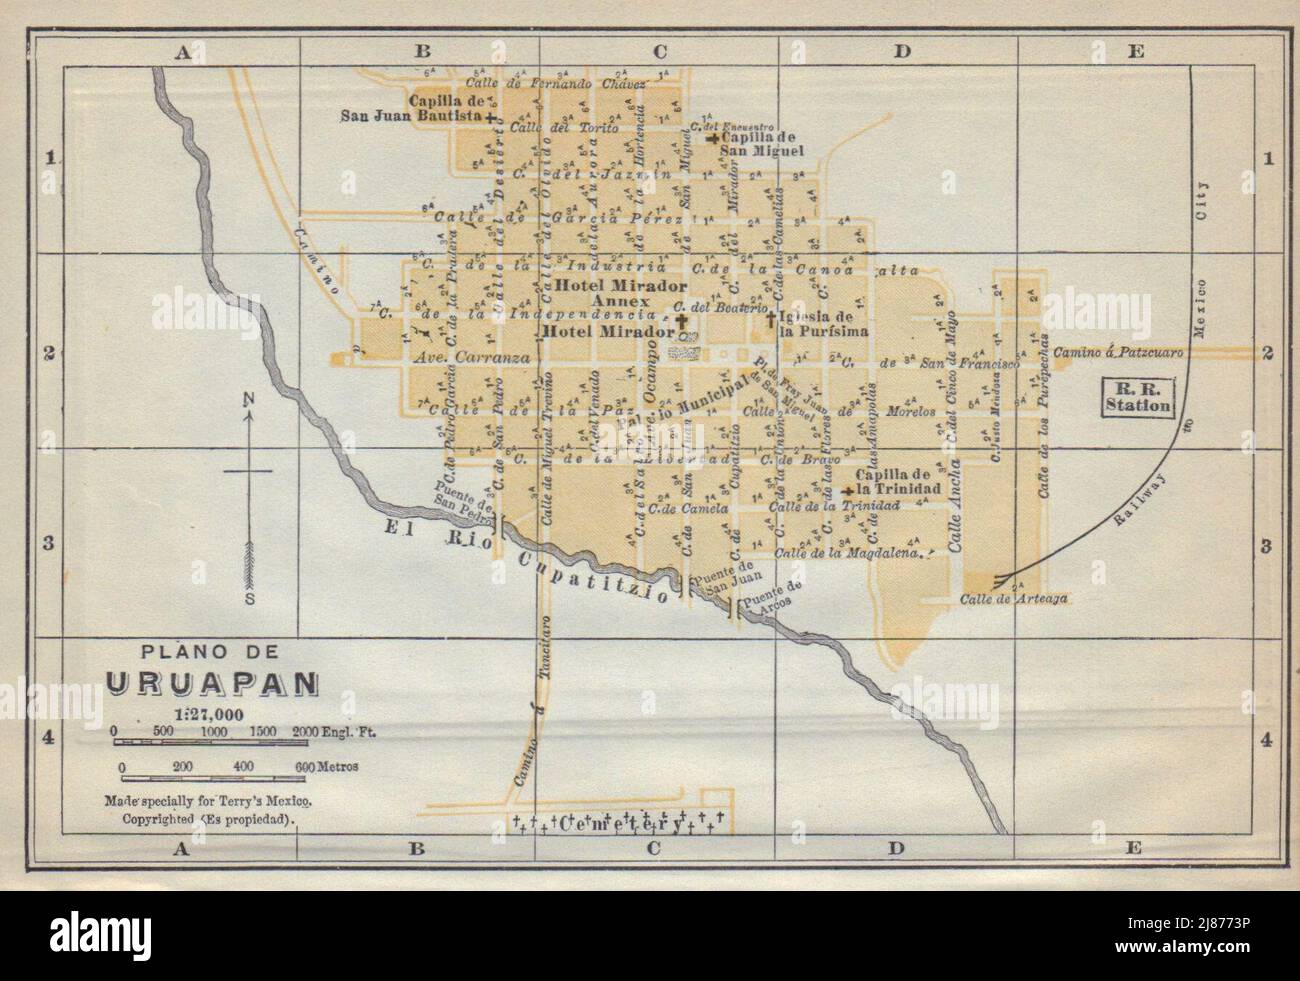 Plano de URUAPAN, Mexico. Mapa de la ciudad. City/town plan 1938 old Stock Photo